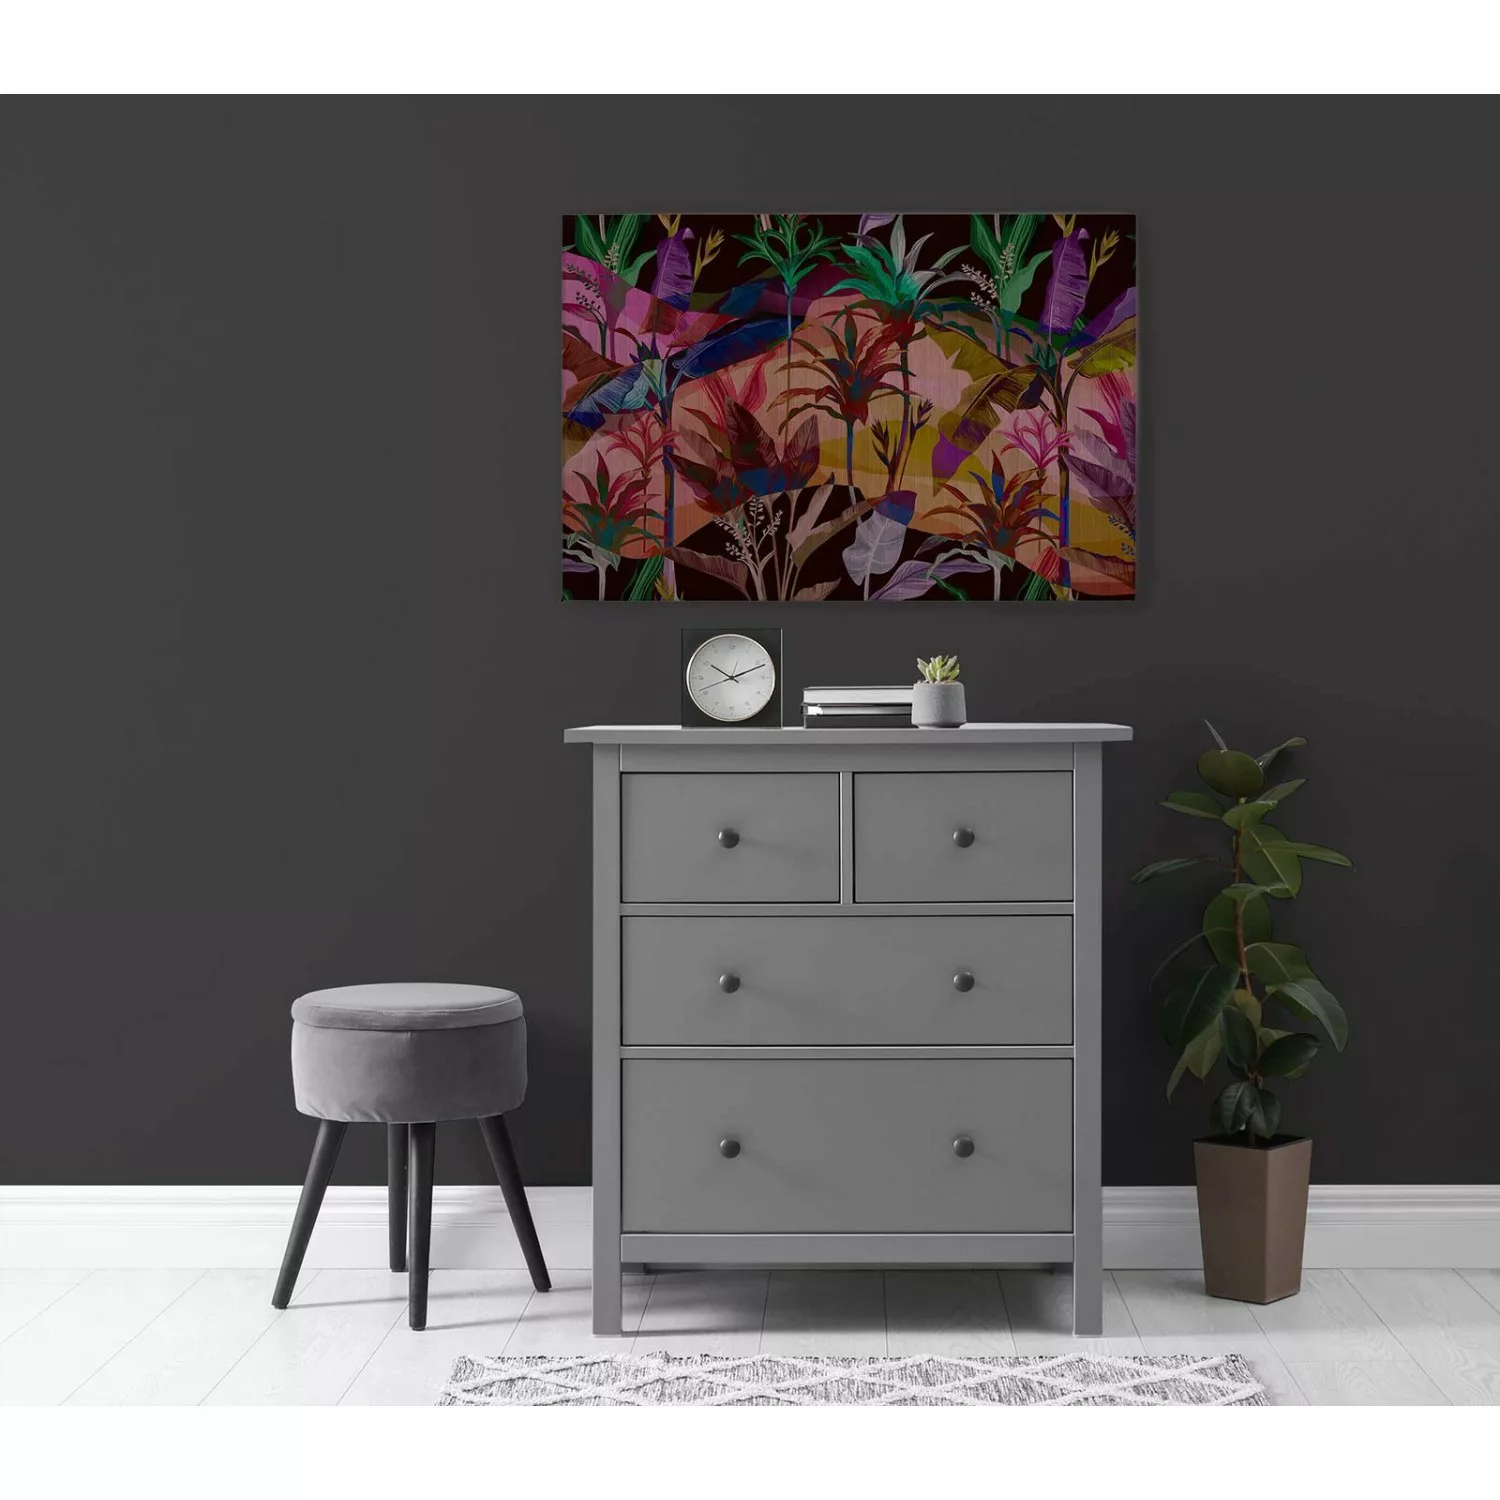 Bricoflor Leinwandbild 120X80 Cm Wandbild Mit Dschungel Motiv Bunt Modernes günstig online kaufen